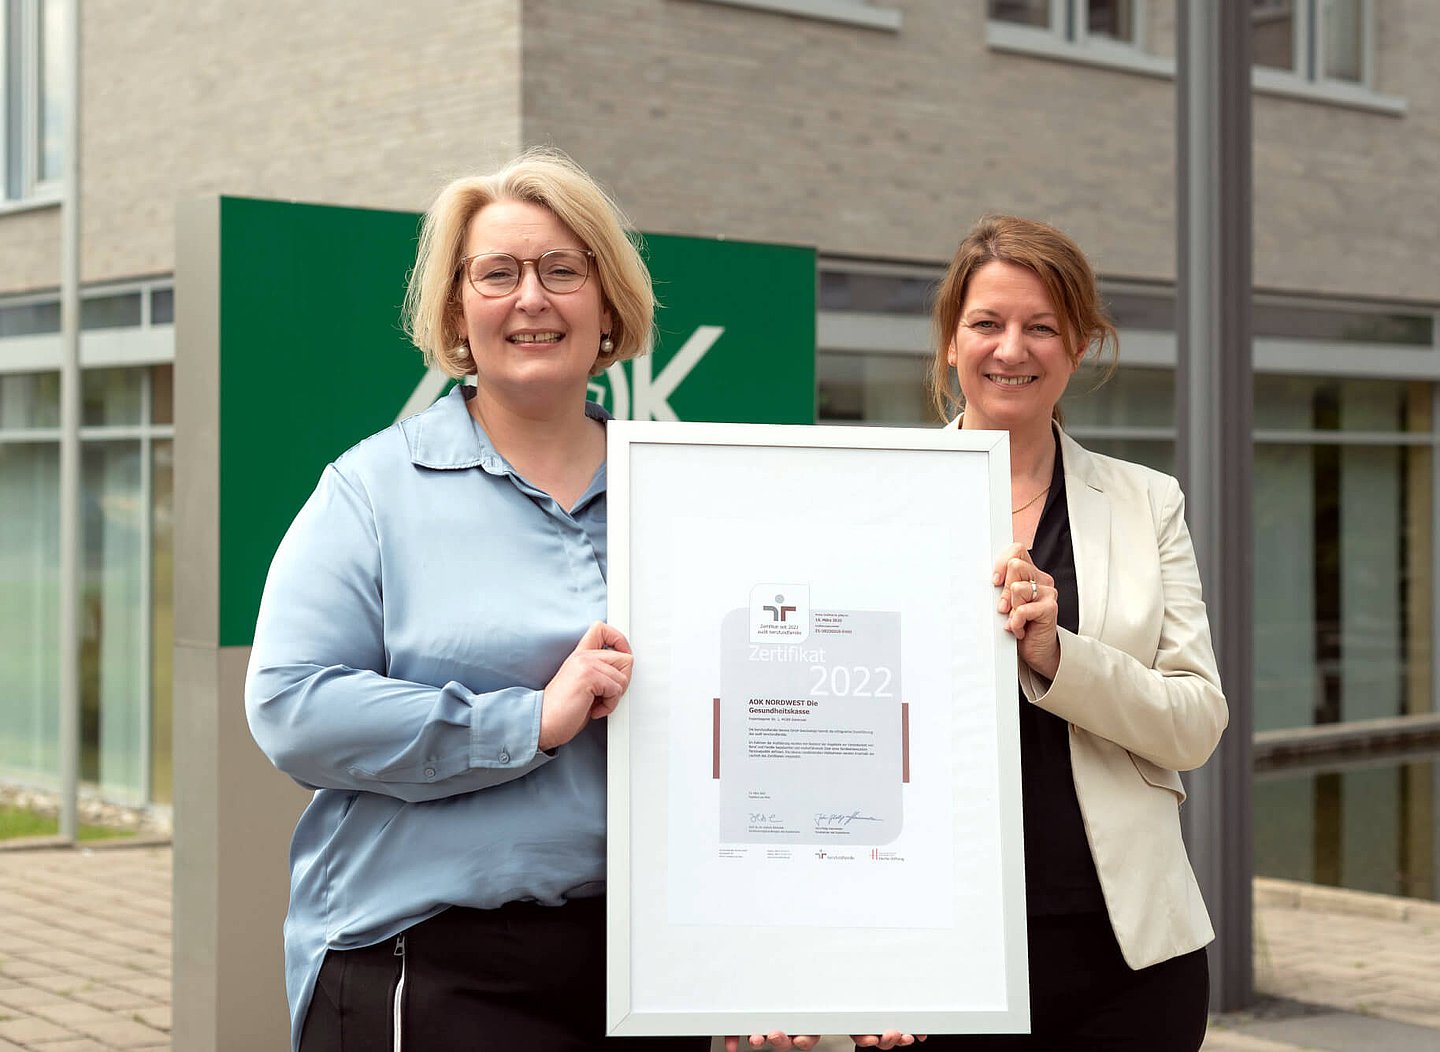 AOK-Personalvorständin Iris Kröner (rechts) und Gleichstellungsbeauftragte Claudia Fuest halten das Zertifikat in die Kamera.